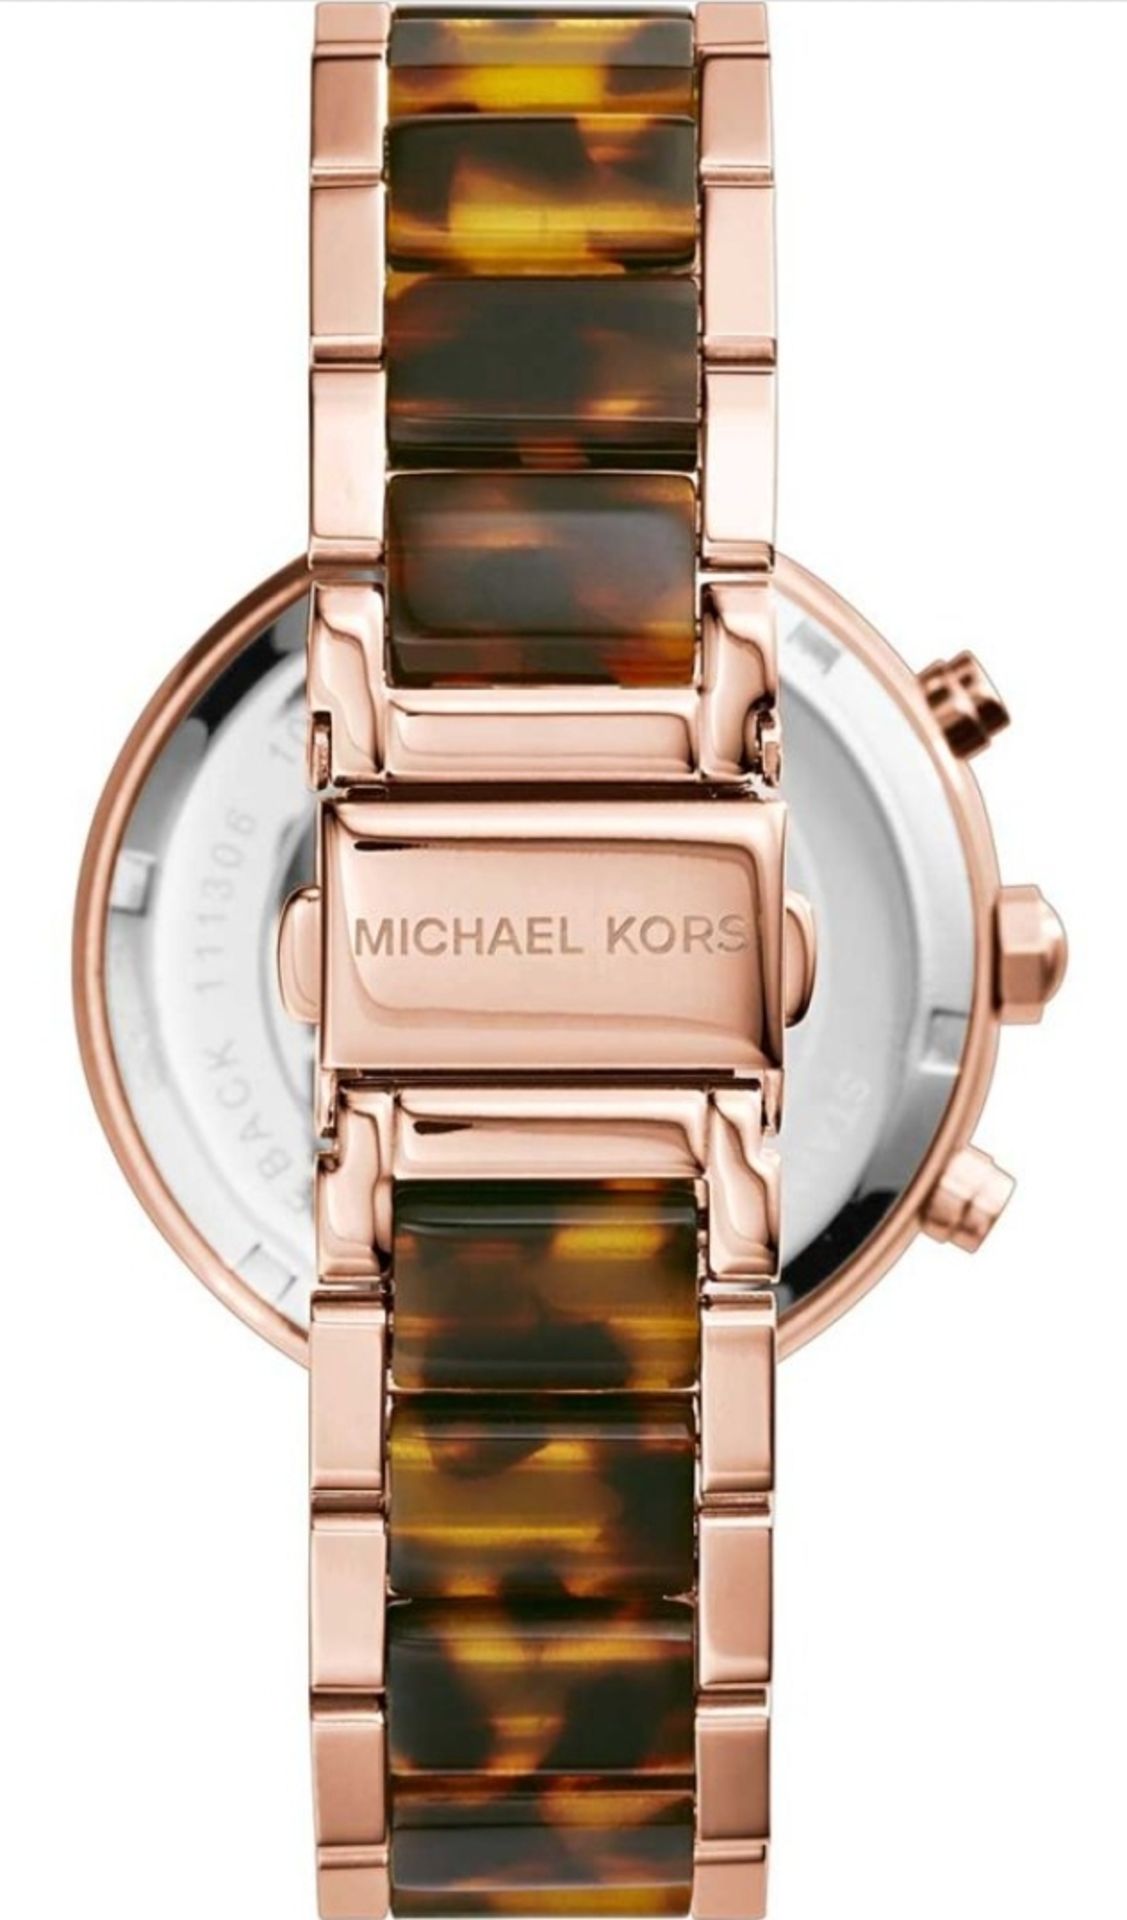 Michael Kors MK5538 Ladies Parker Watch - Image 7 of 10